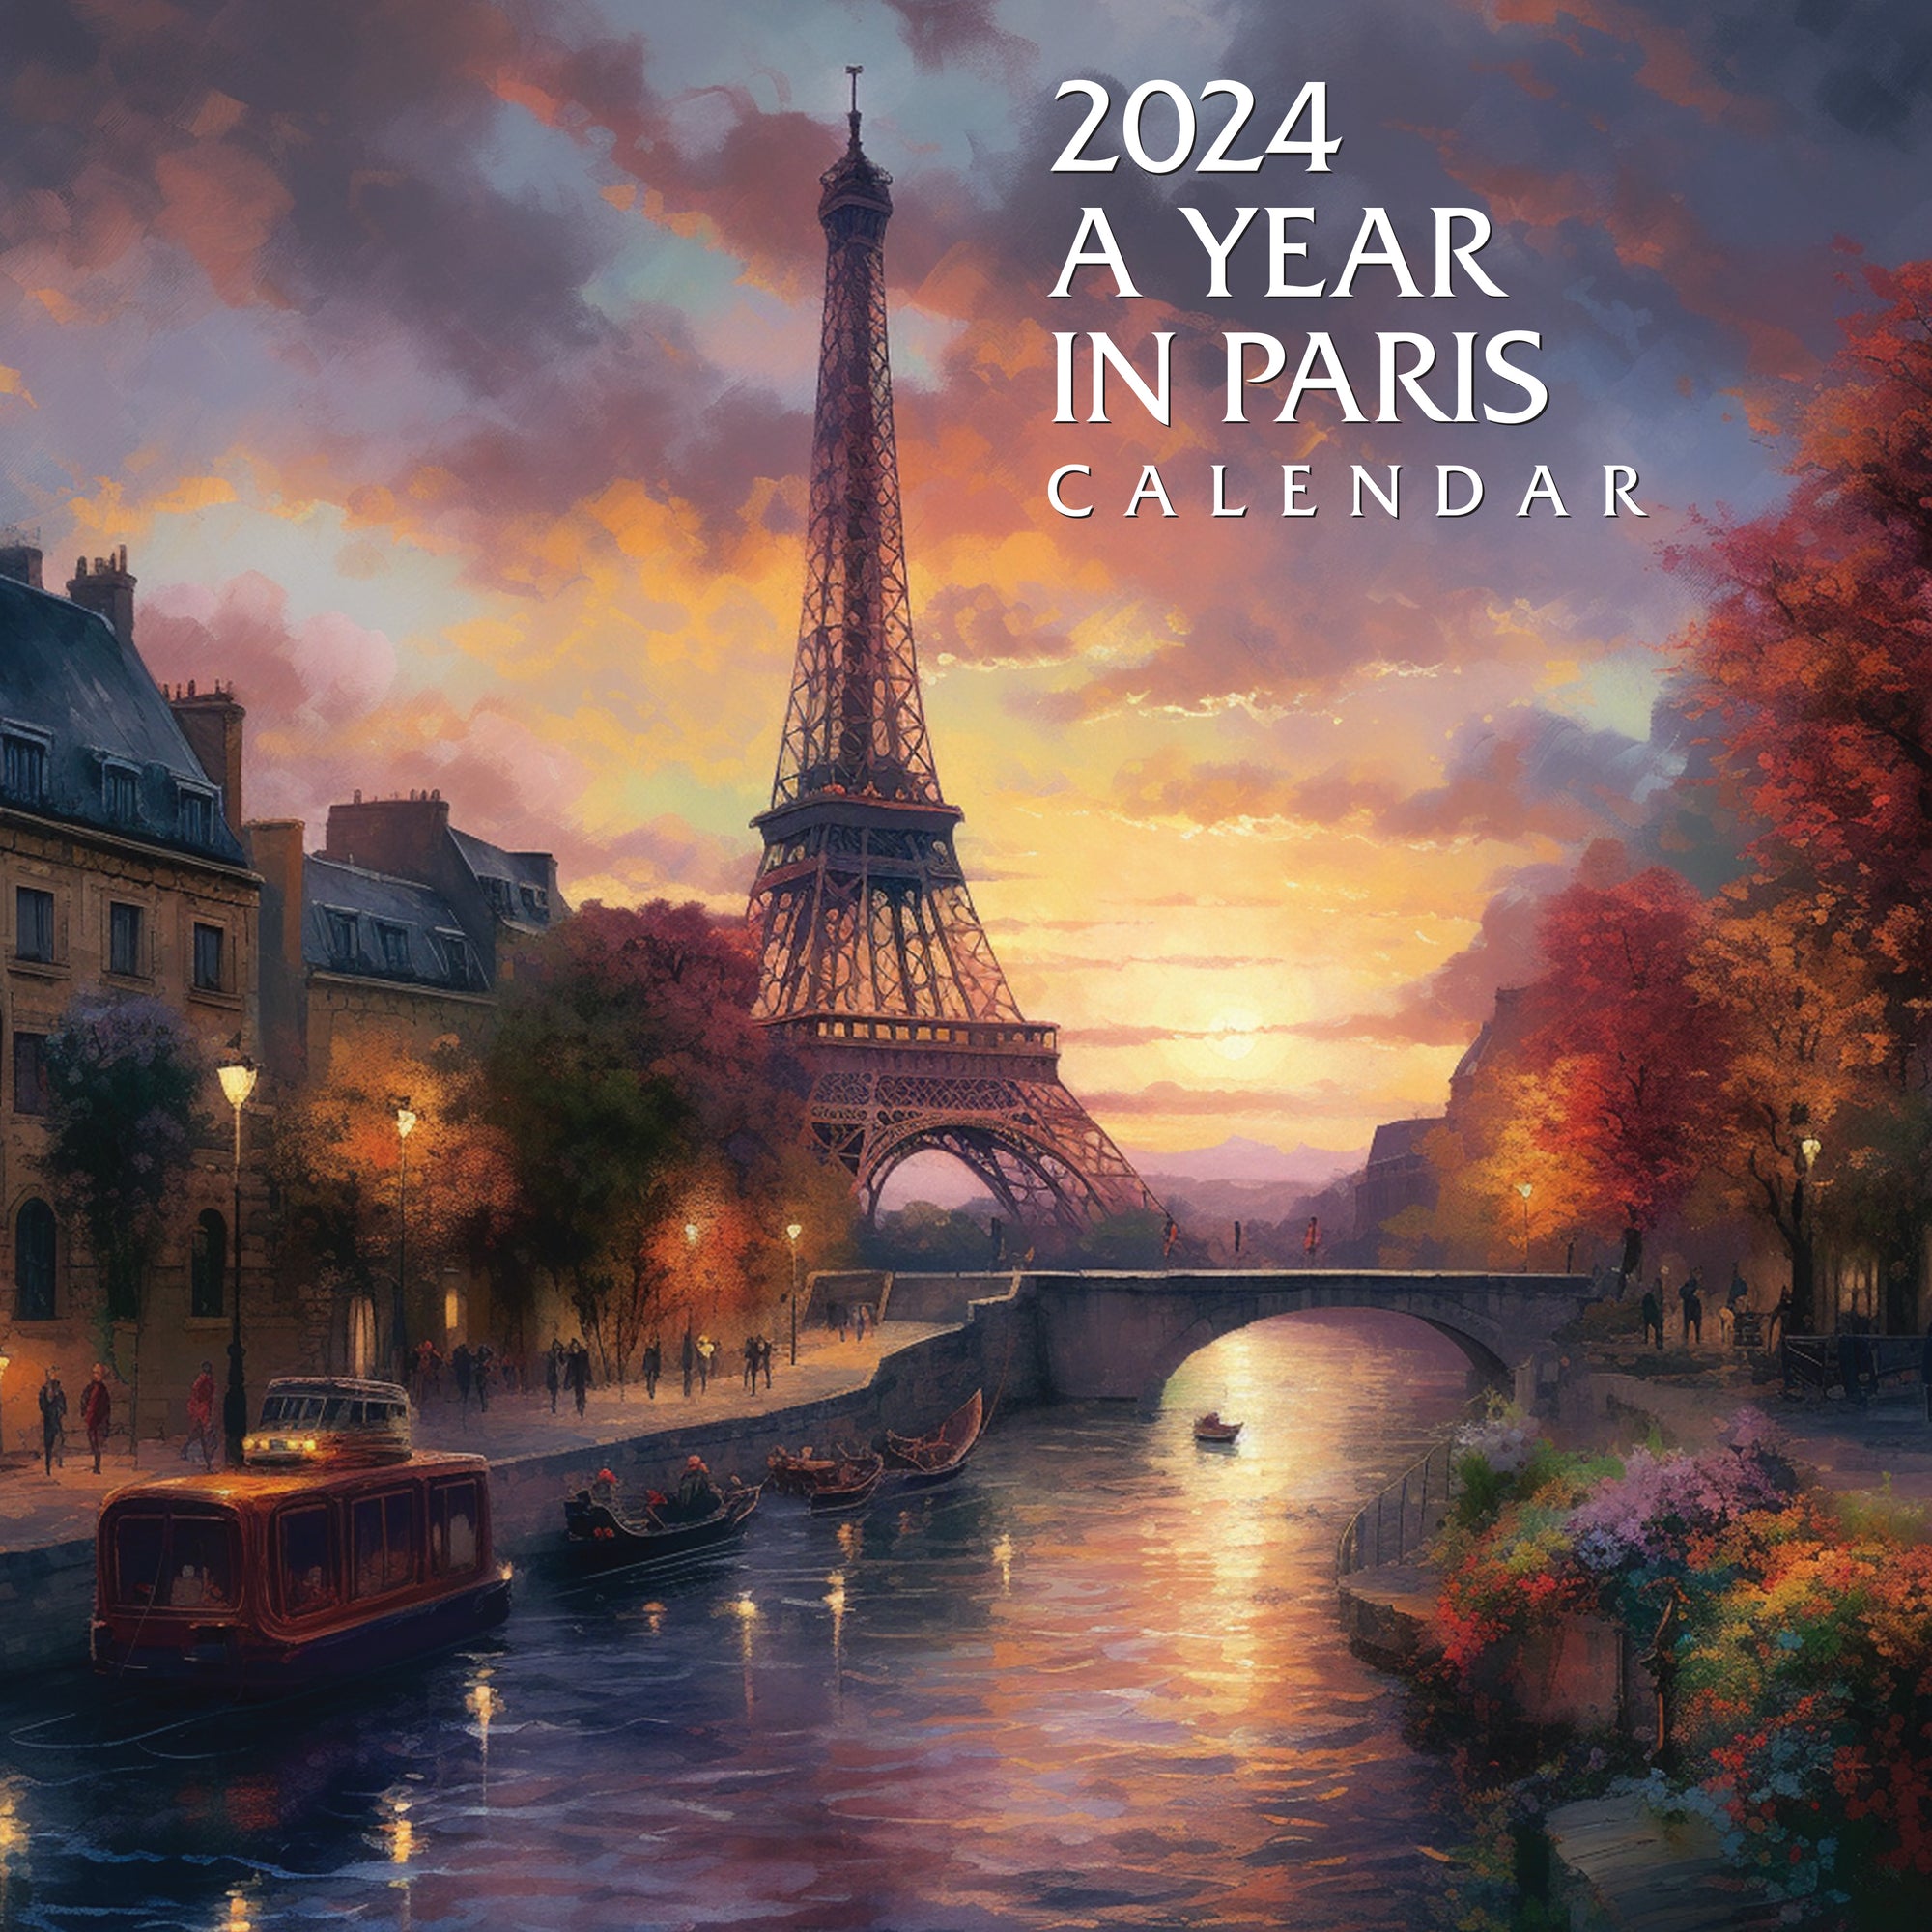 2024 A Year In Paris Calendar